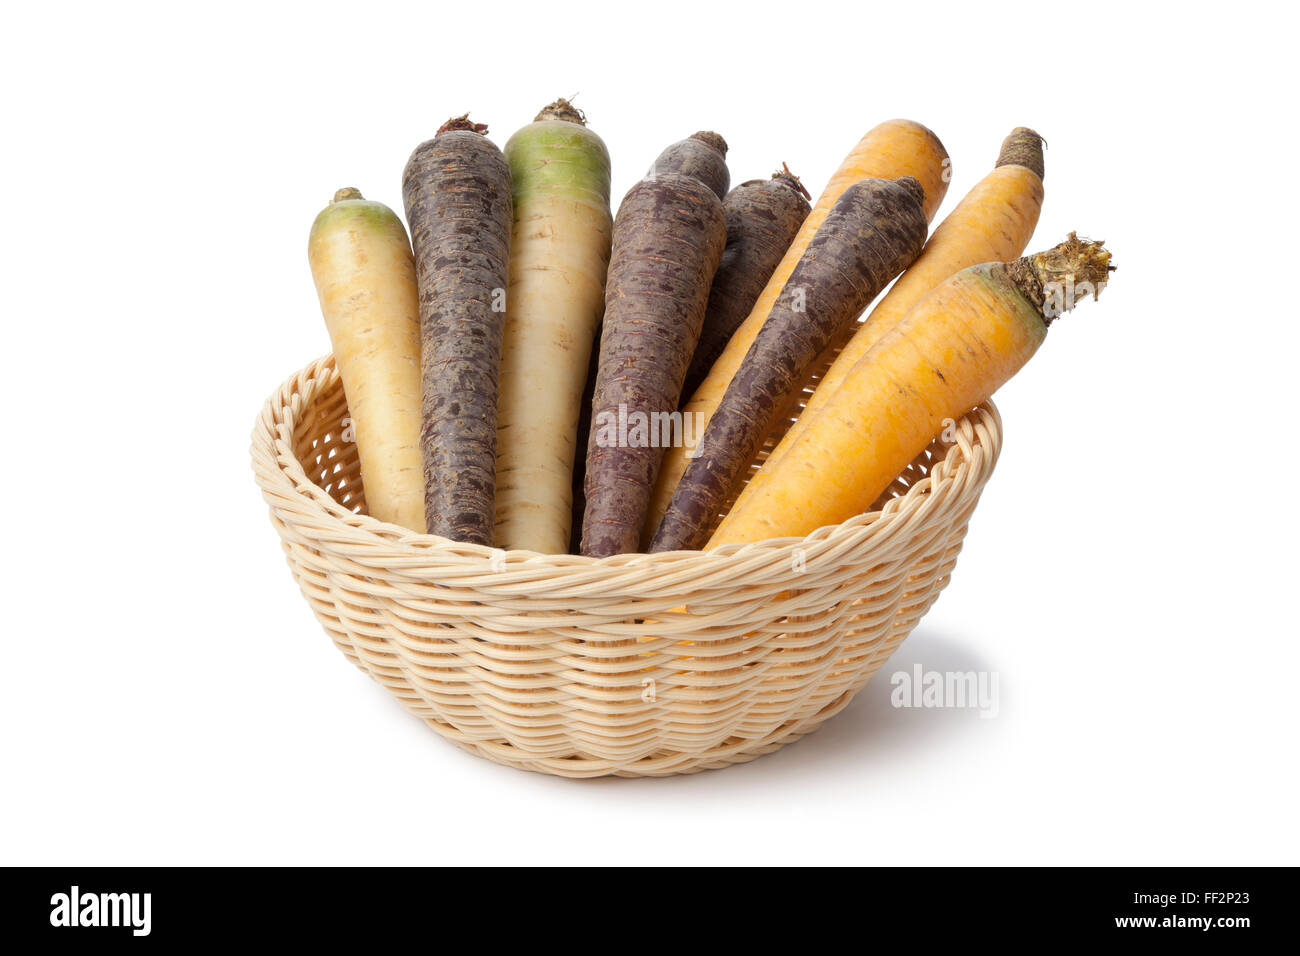 Crudo fresco nero, bianco e giallo le carote in un cesto su sfondo bianco Foto Stock